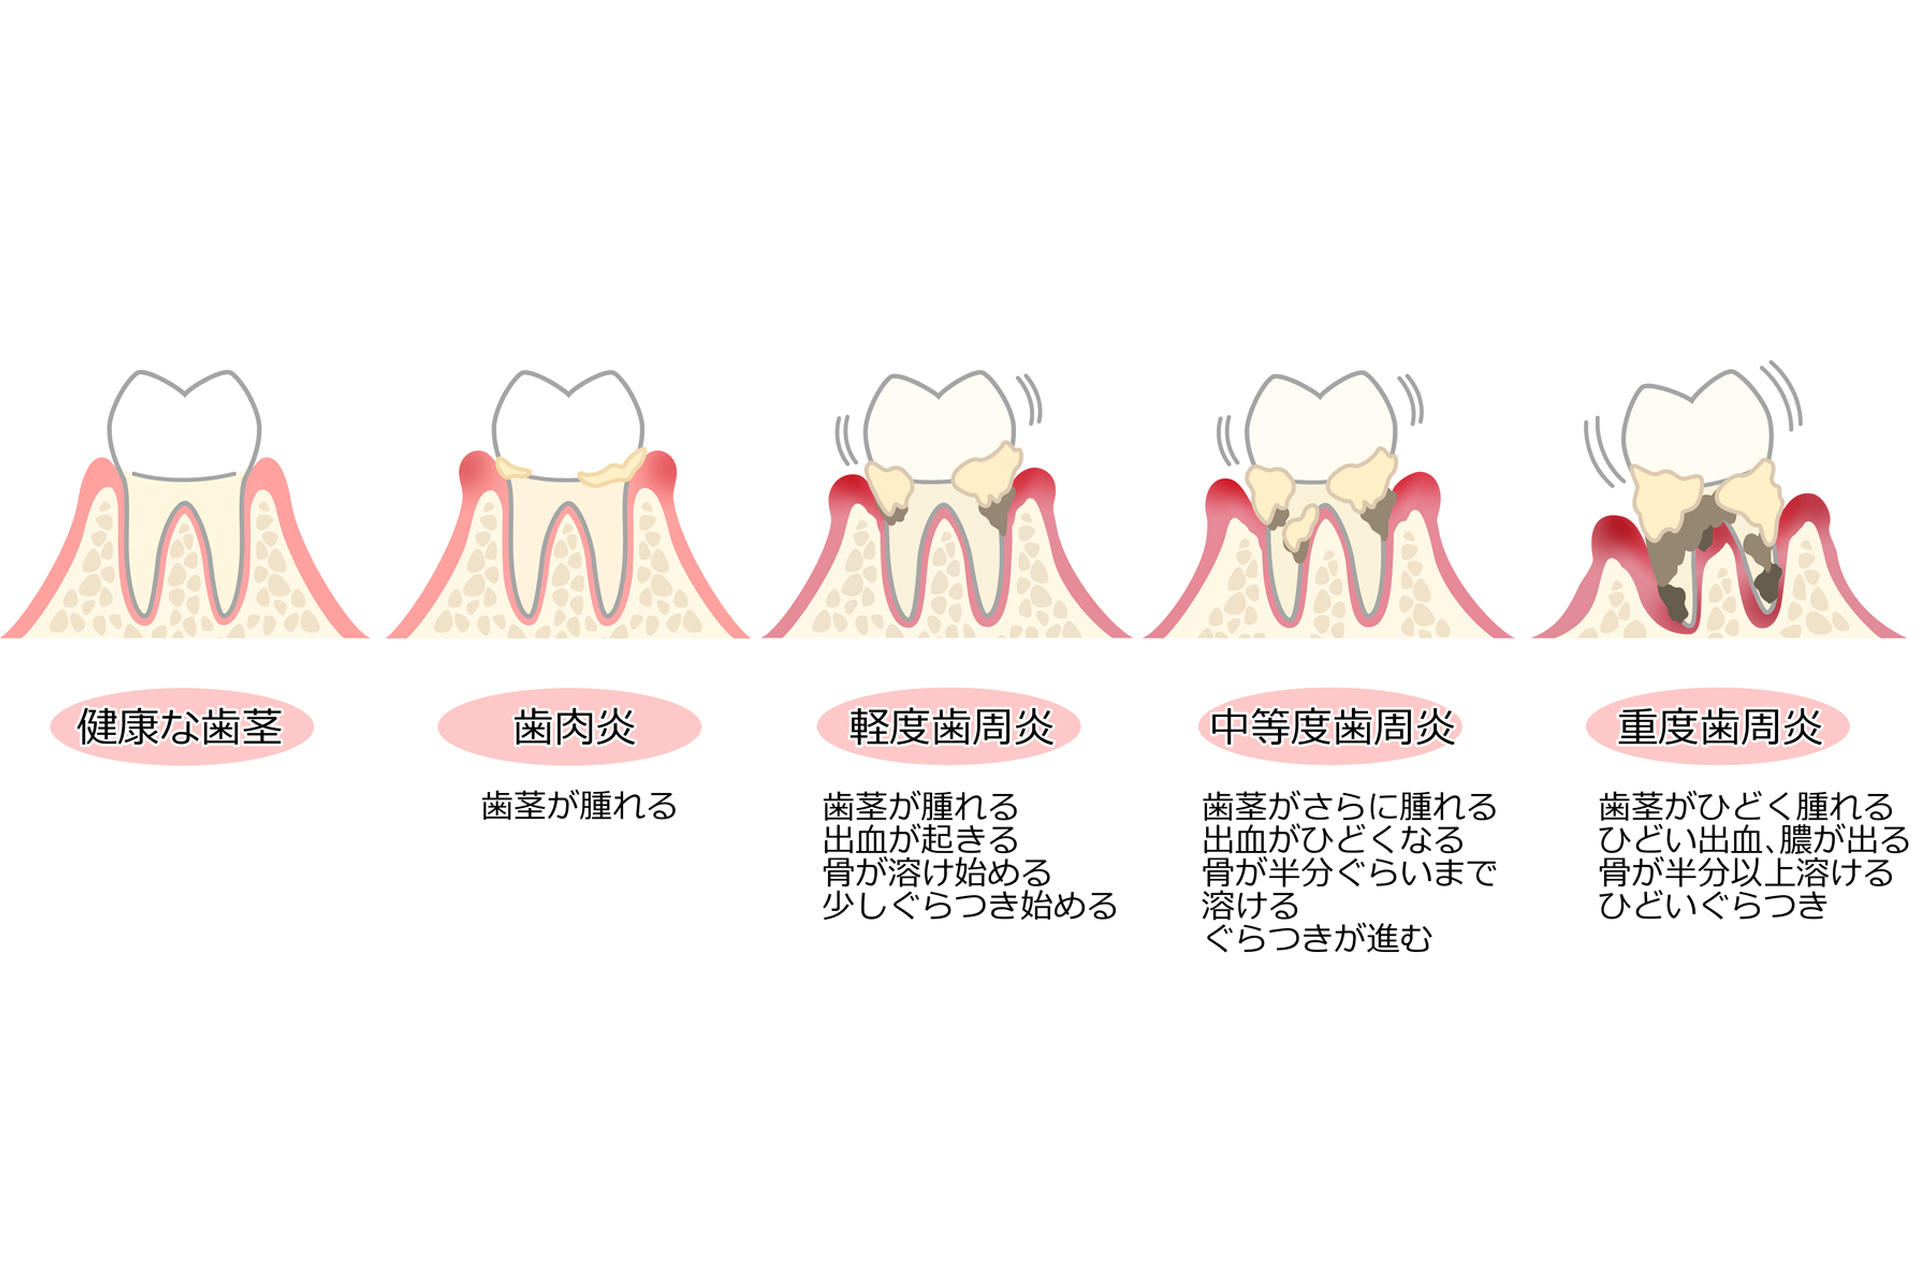 歯周病段階